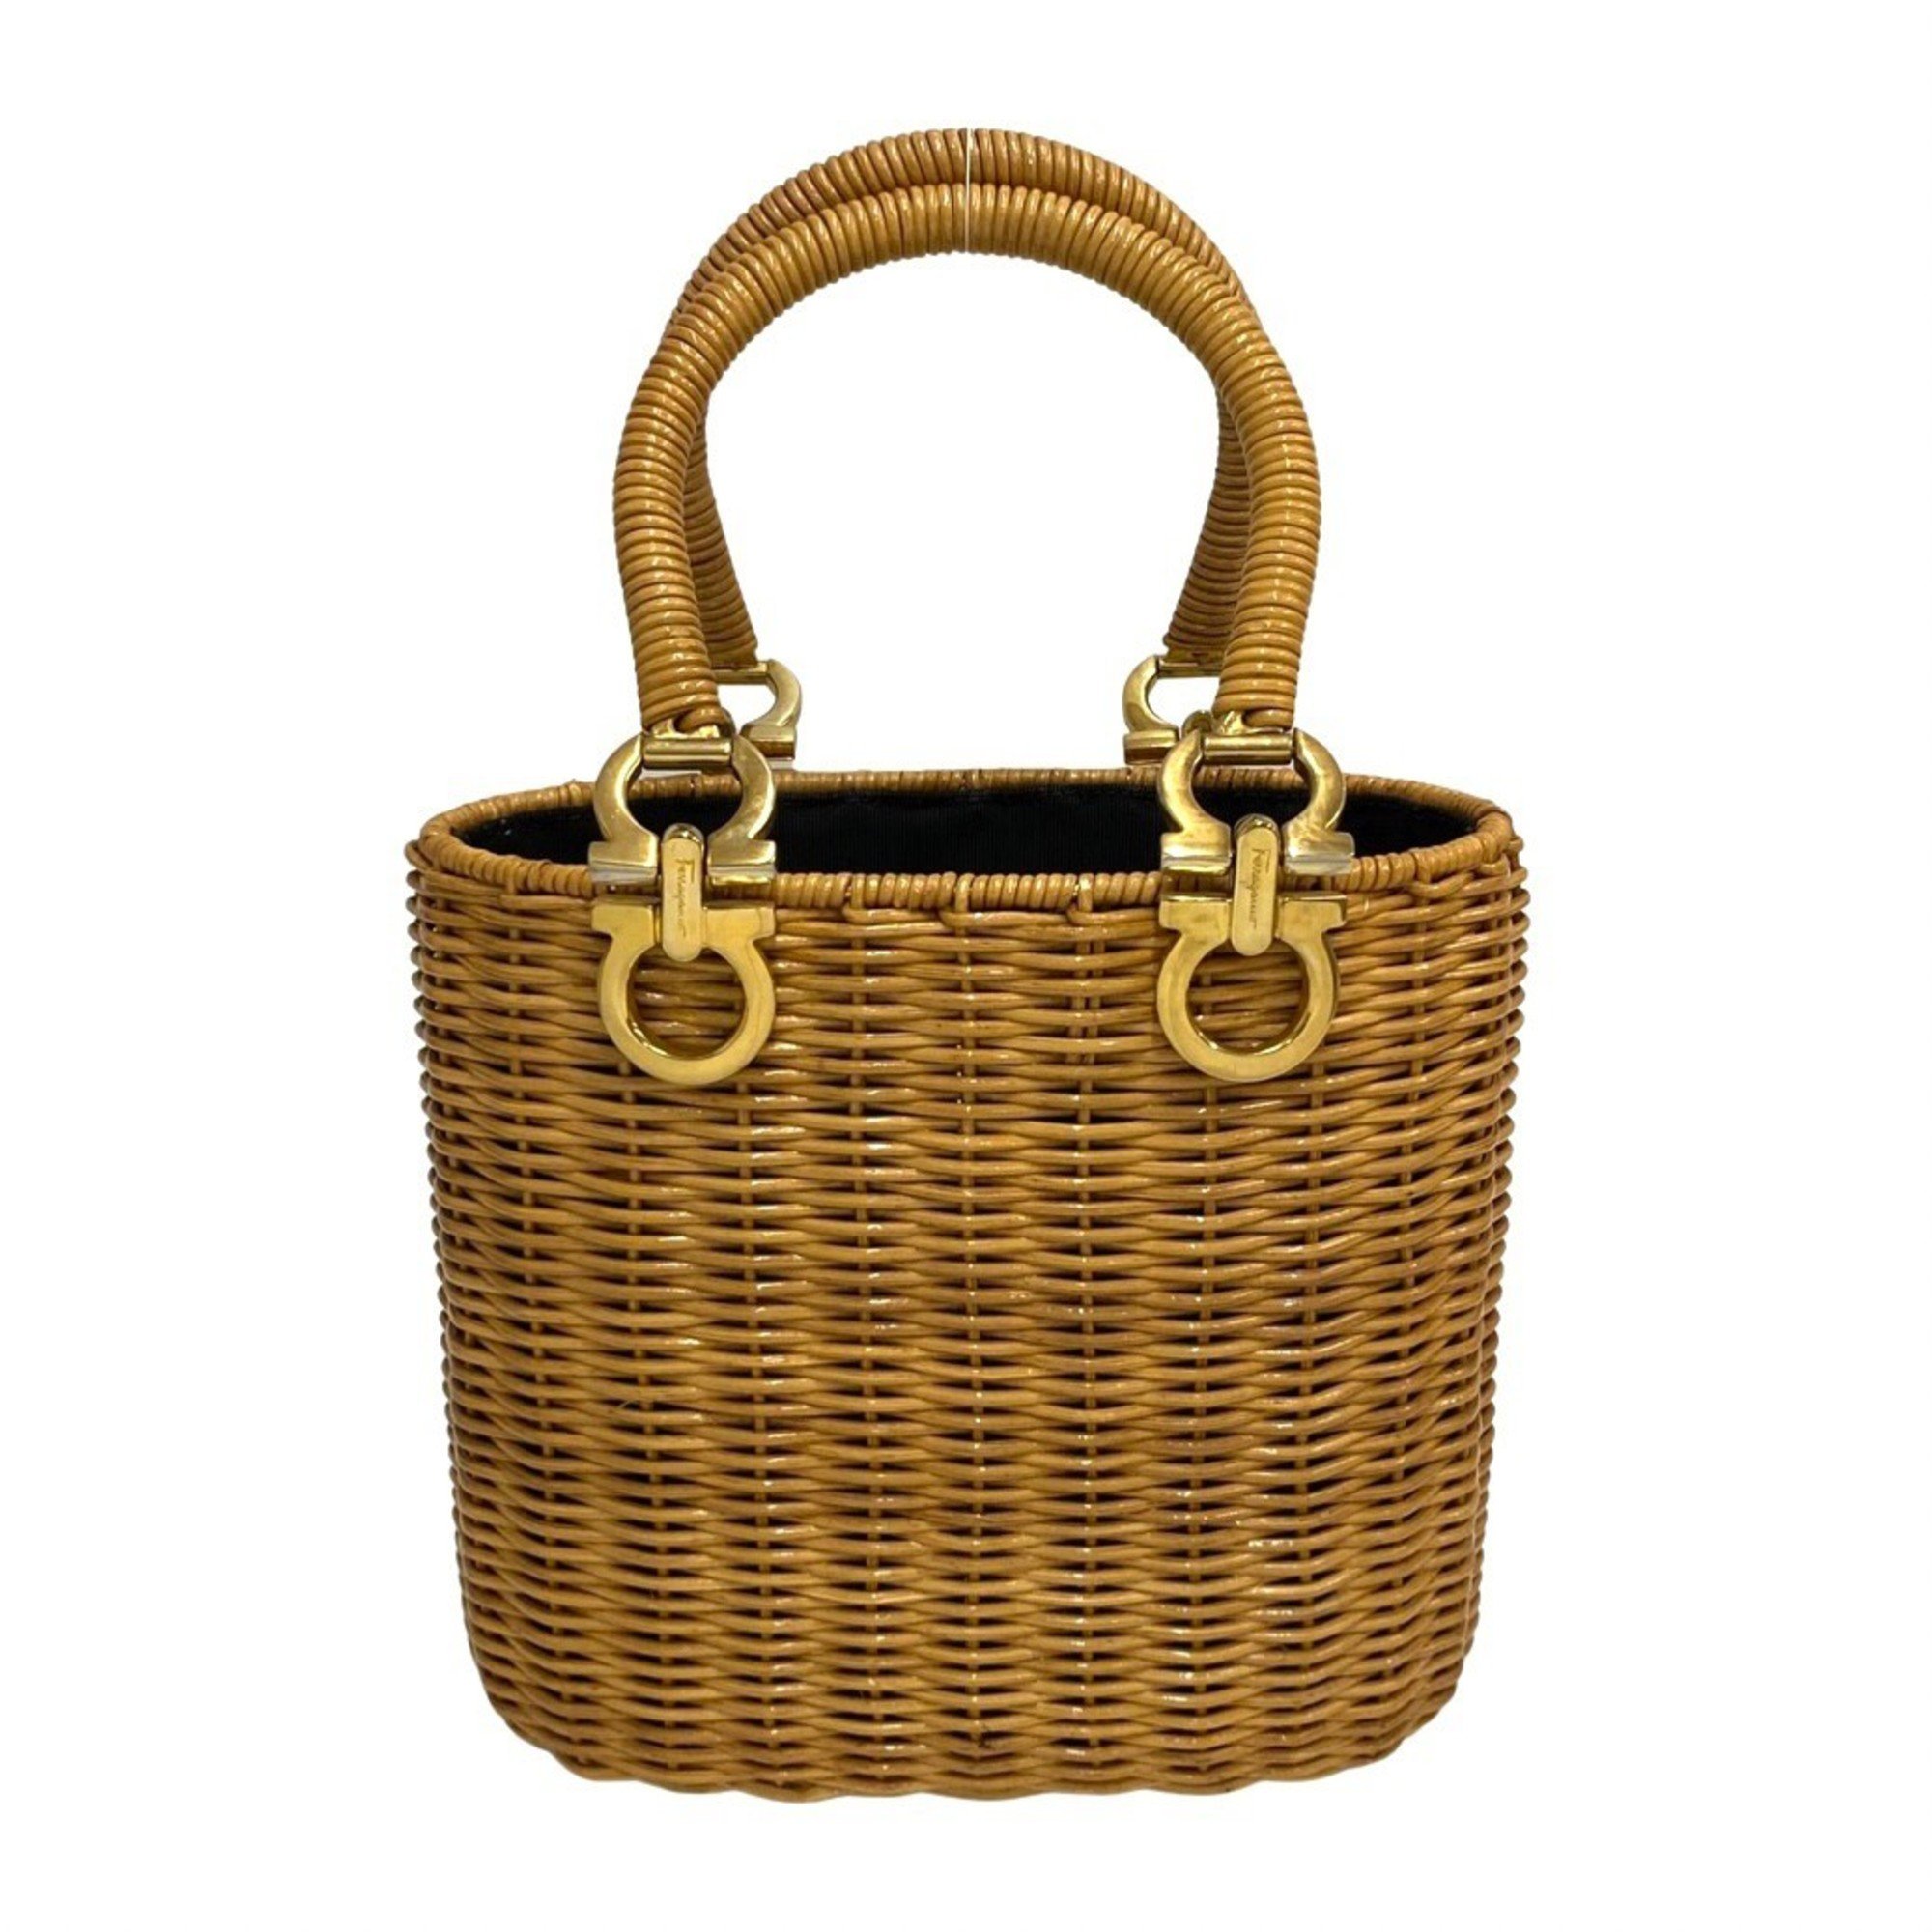 Salvatore Ferragamo Gancini logo metal fittings rattan handbag basket bag beige